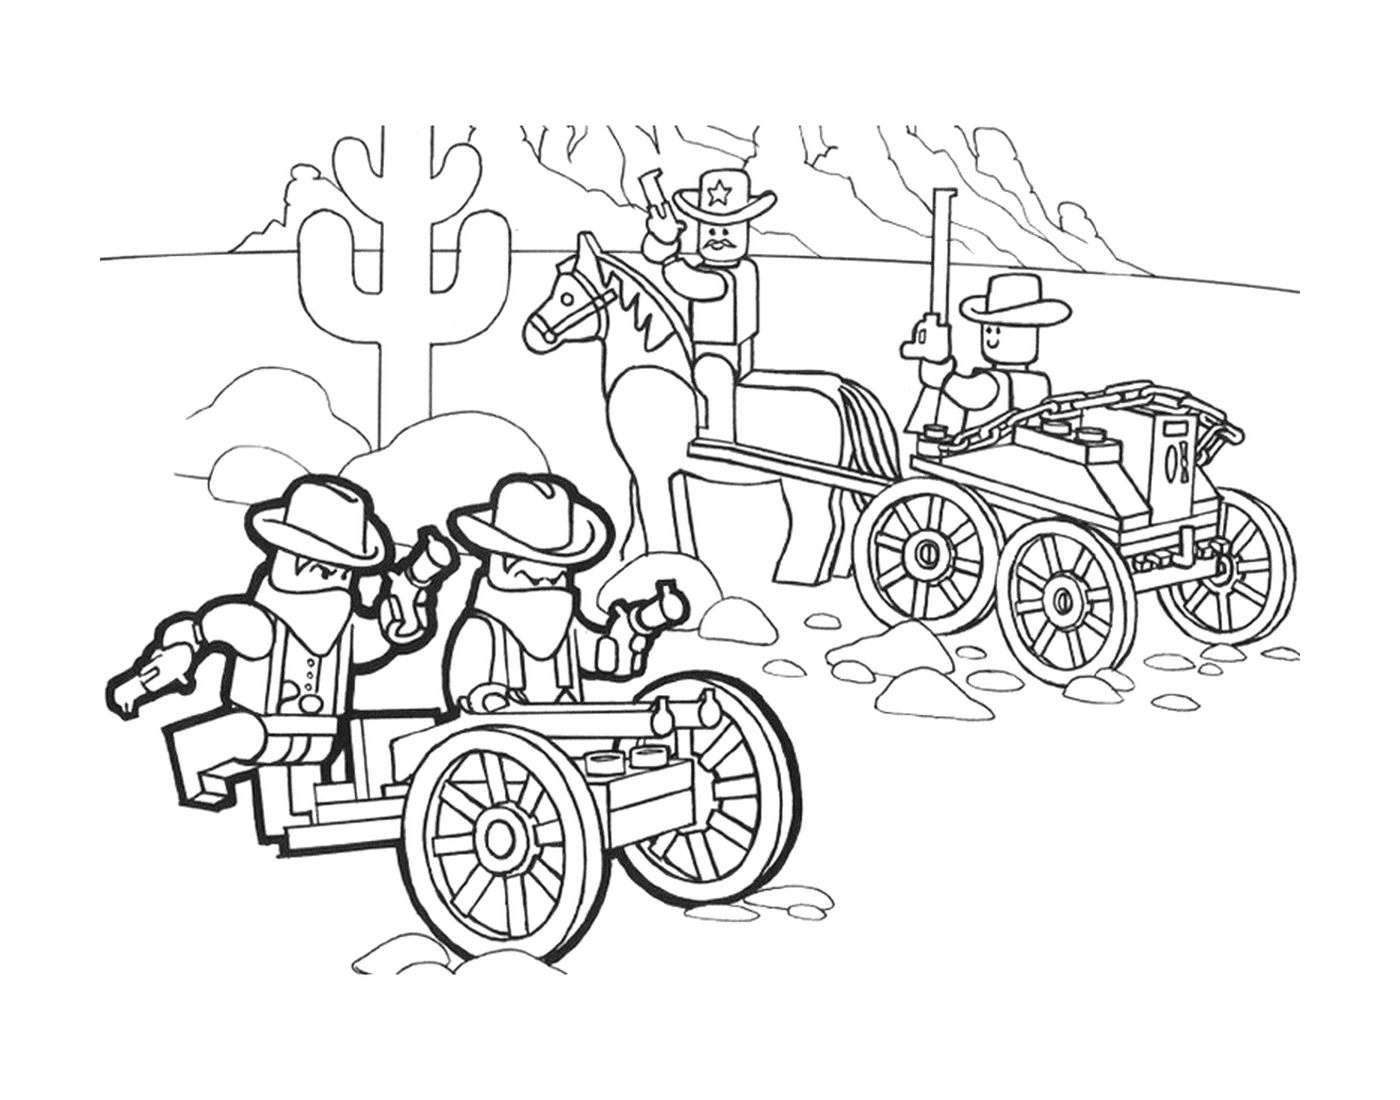  Cowboy and Lego wagon 